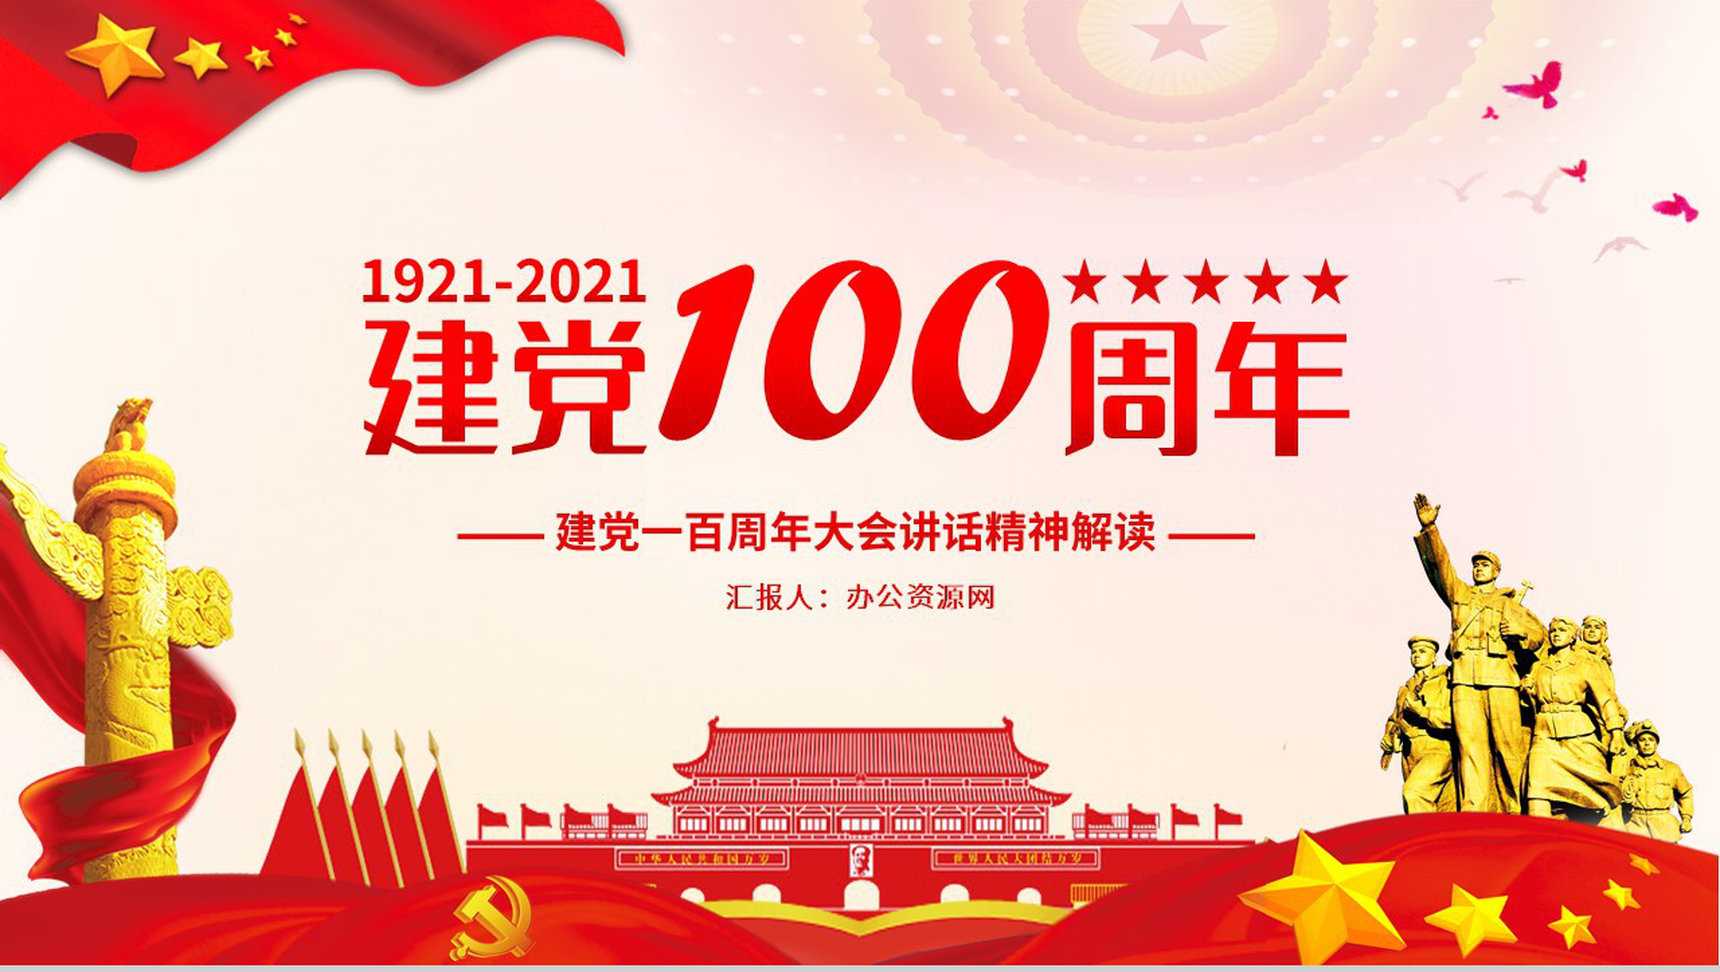 党政风庆祝中国共产党成立一百周年大会的总要讲话PPT模板-1